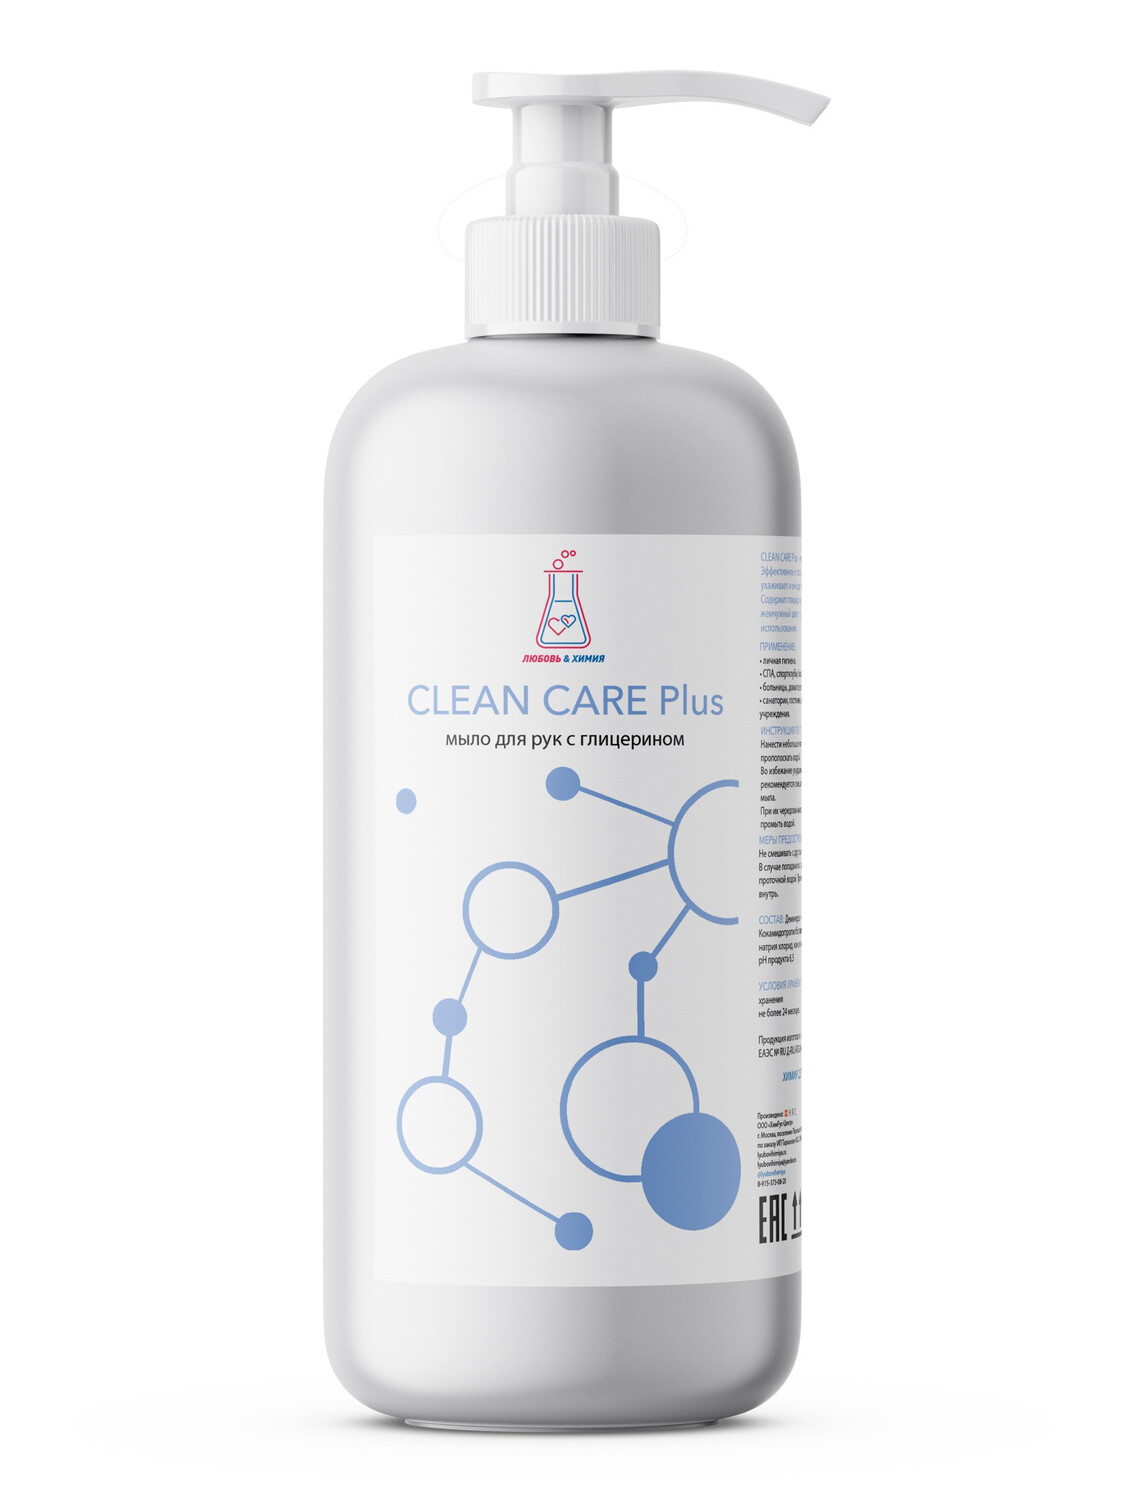 Жидкое мыло для рук с глицерином Clean Care Plus
Нейтральное средство